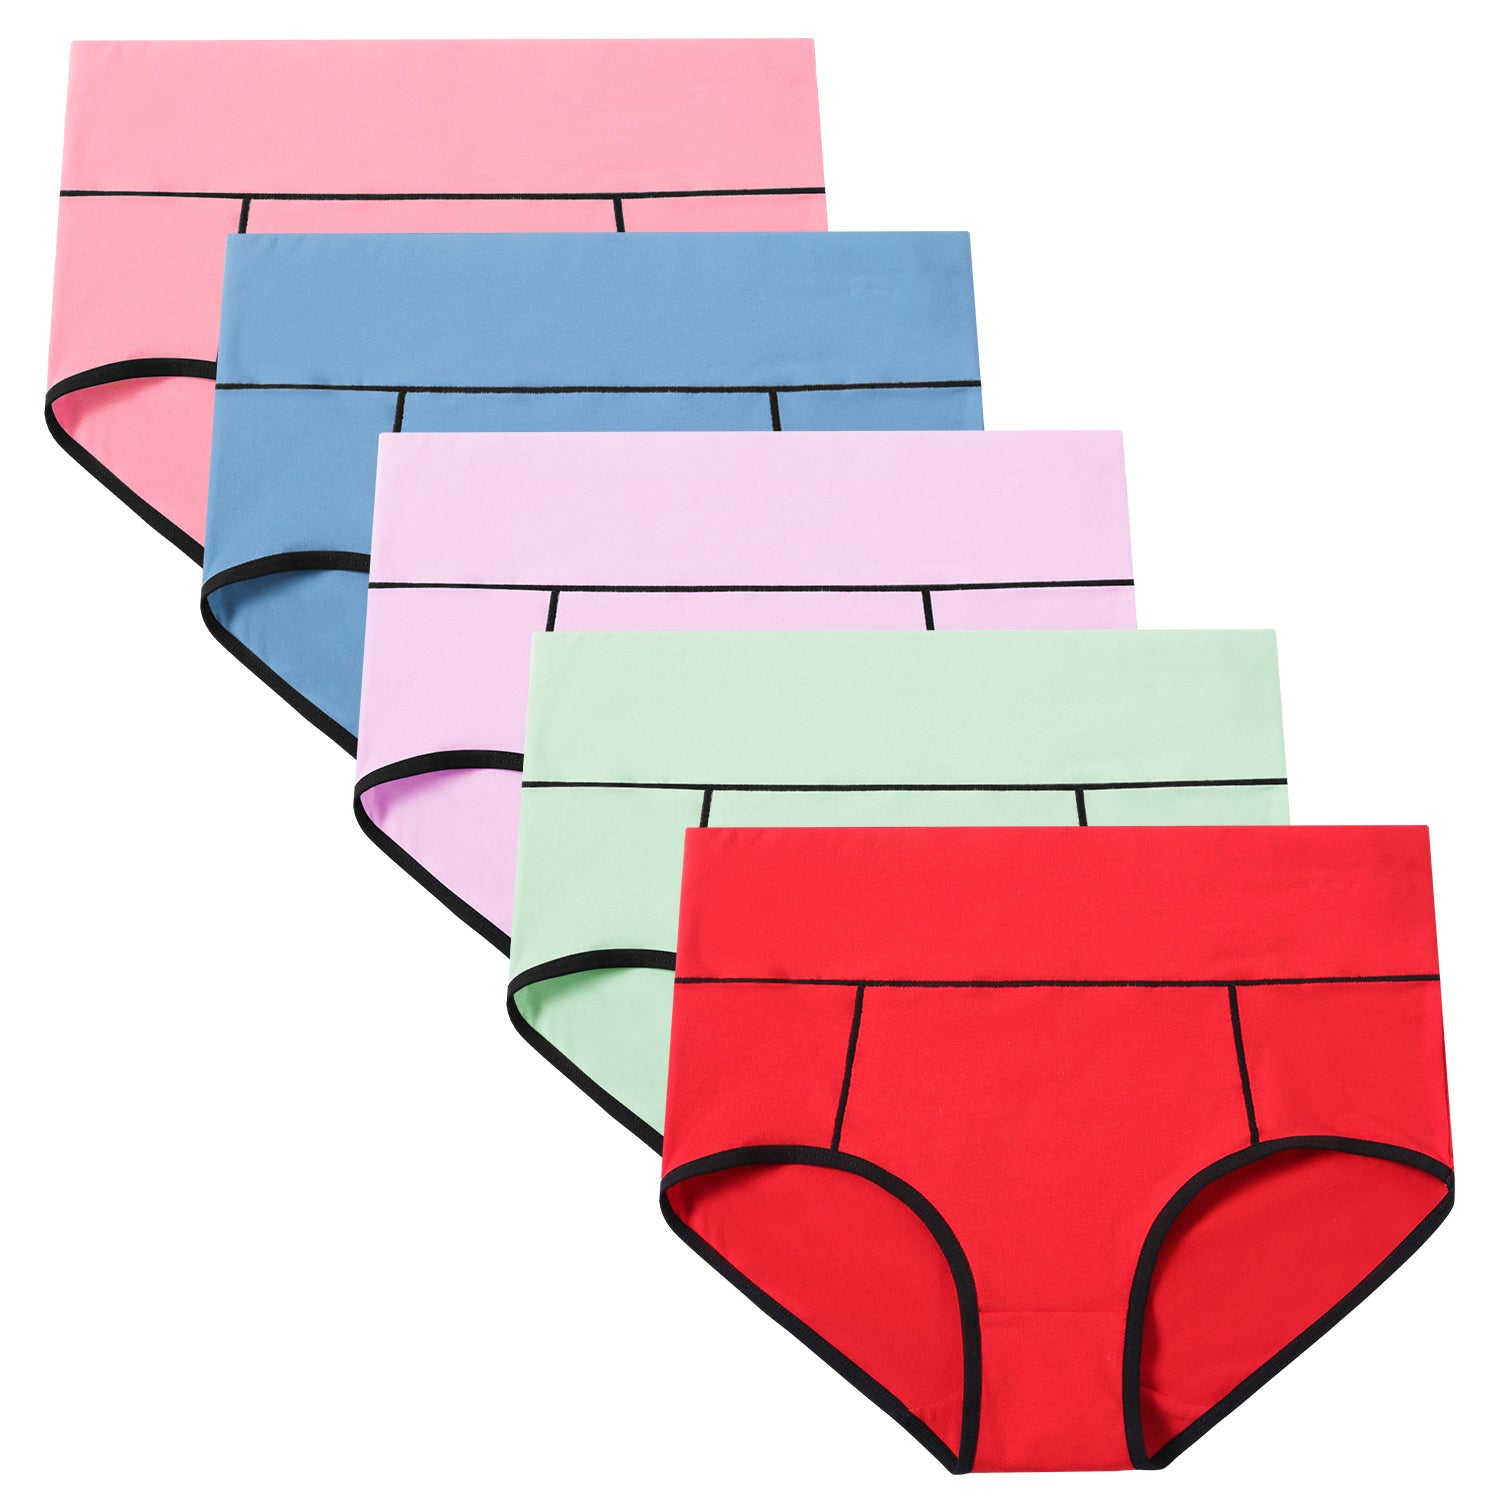 Cheap LANGSHA 4Pcs Women's Underwear Cotton Panties High Waist Briefs Ladies  Underpants Size M-5XL